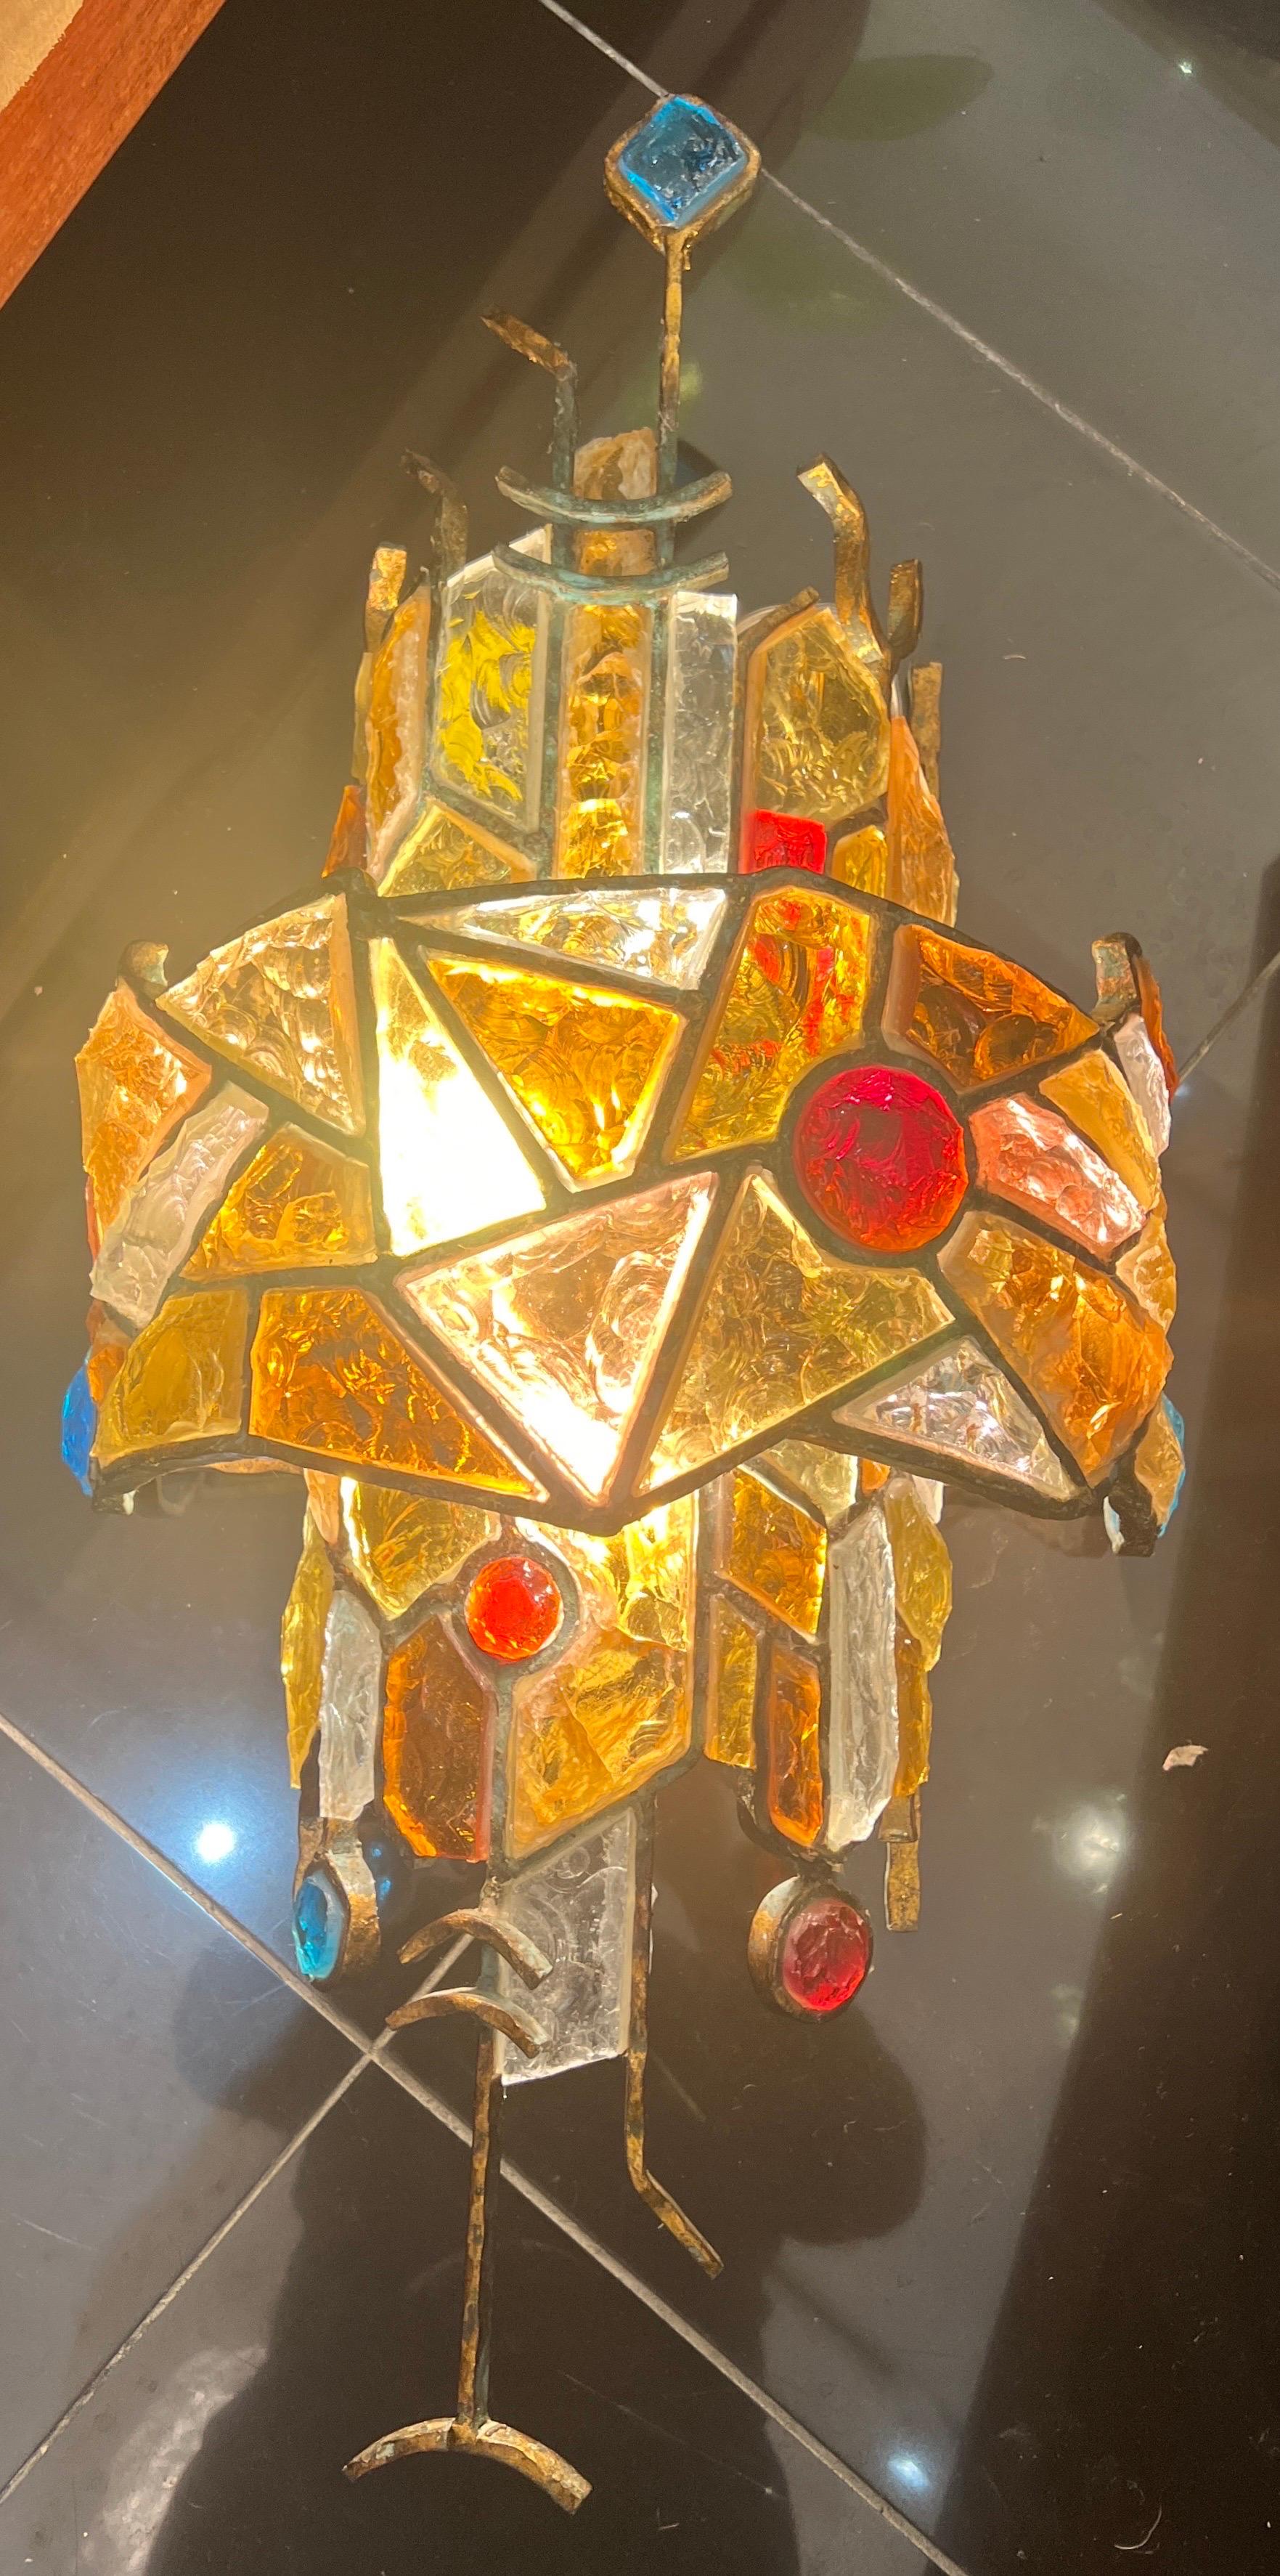 Eine große skulpturale Wandleuchte aus vergoldetem Eisen mit mehrfarbigem Glas, das jeweils in einen Metallrahmen verschiedener Formen und Größen eingesetzt ist.
Entworfen von Albano poli 
Hergestellt von poli Arte 
C1960
Italien  